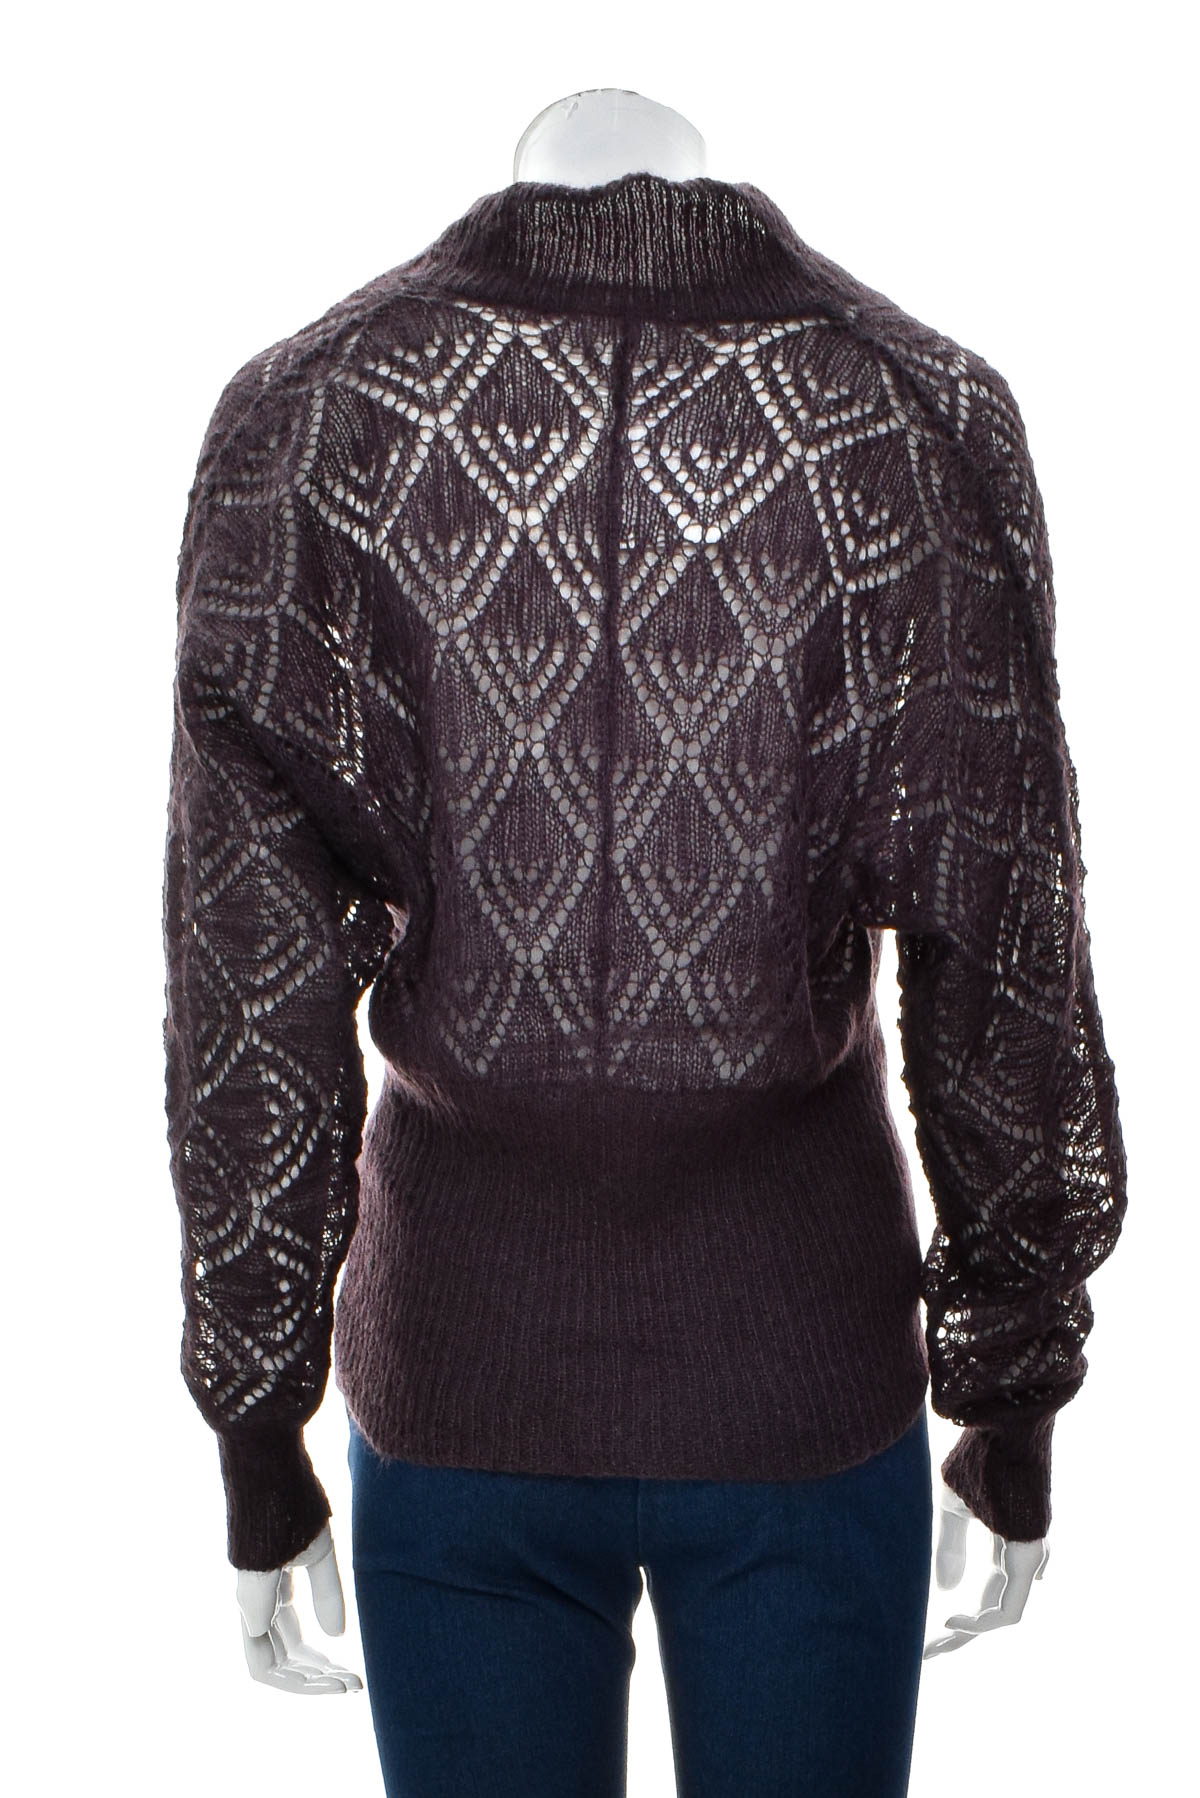 Women's sweater - ANN TAYLOR LOFT - 1